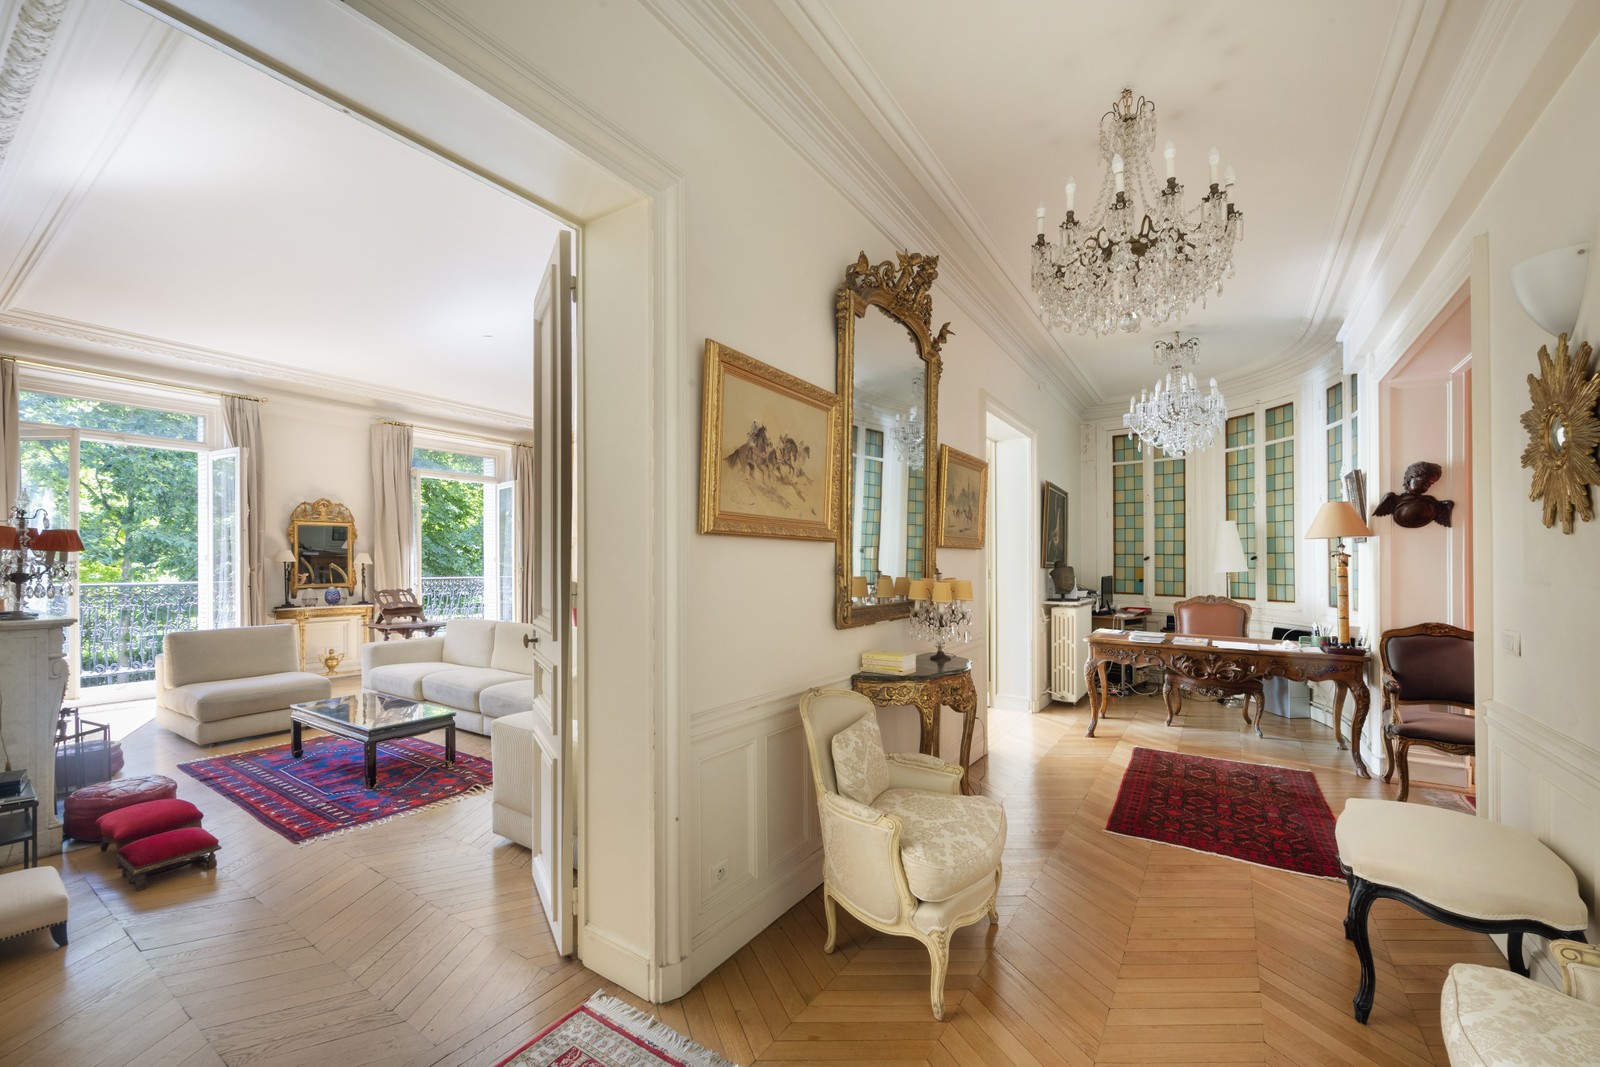 3. Apartments / Flats for Sale at Paris, Paris,75006 France